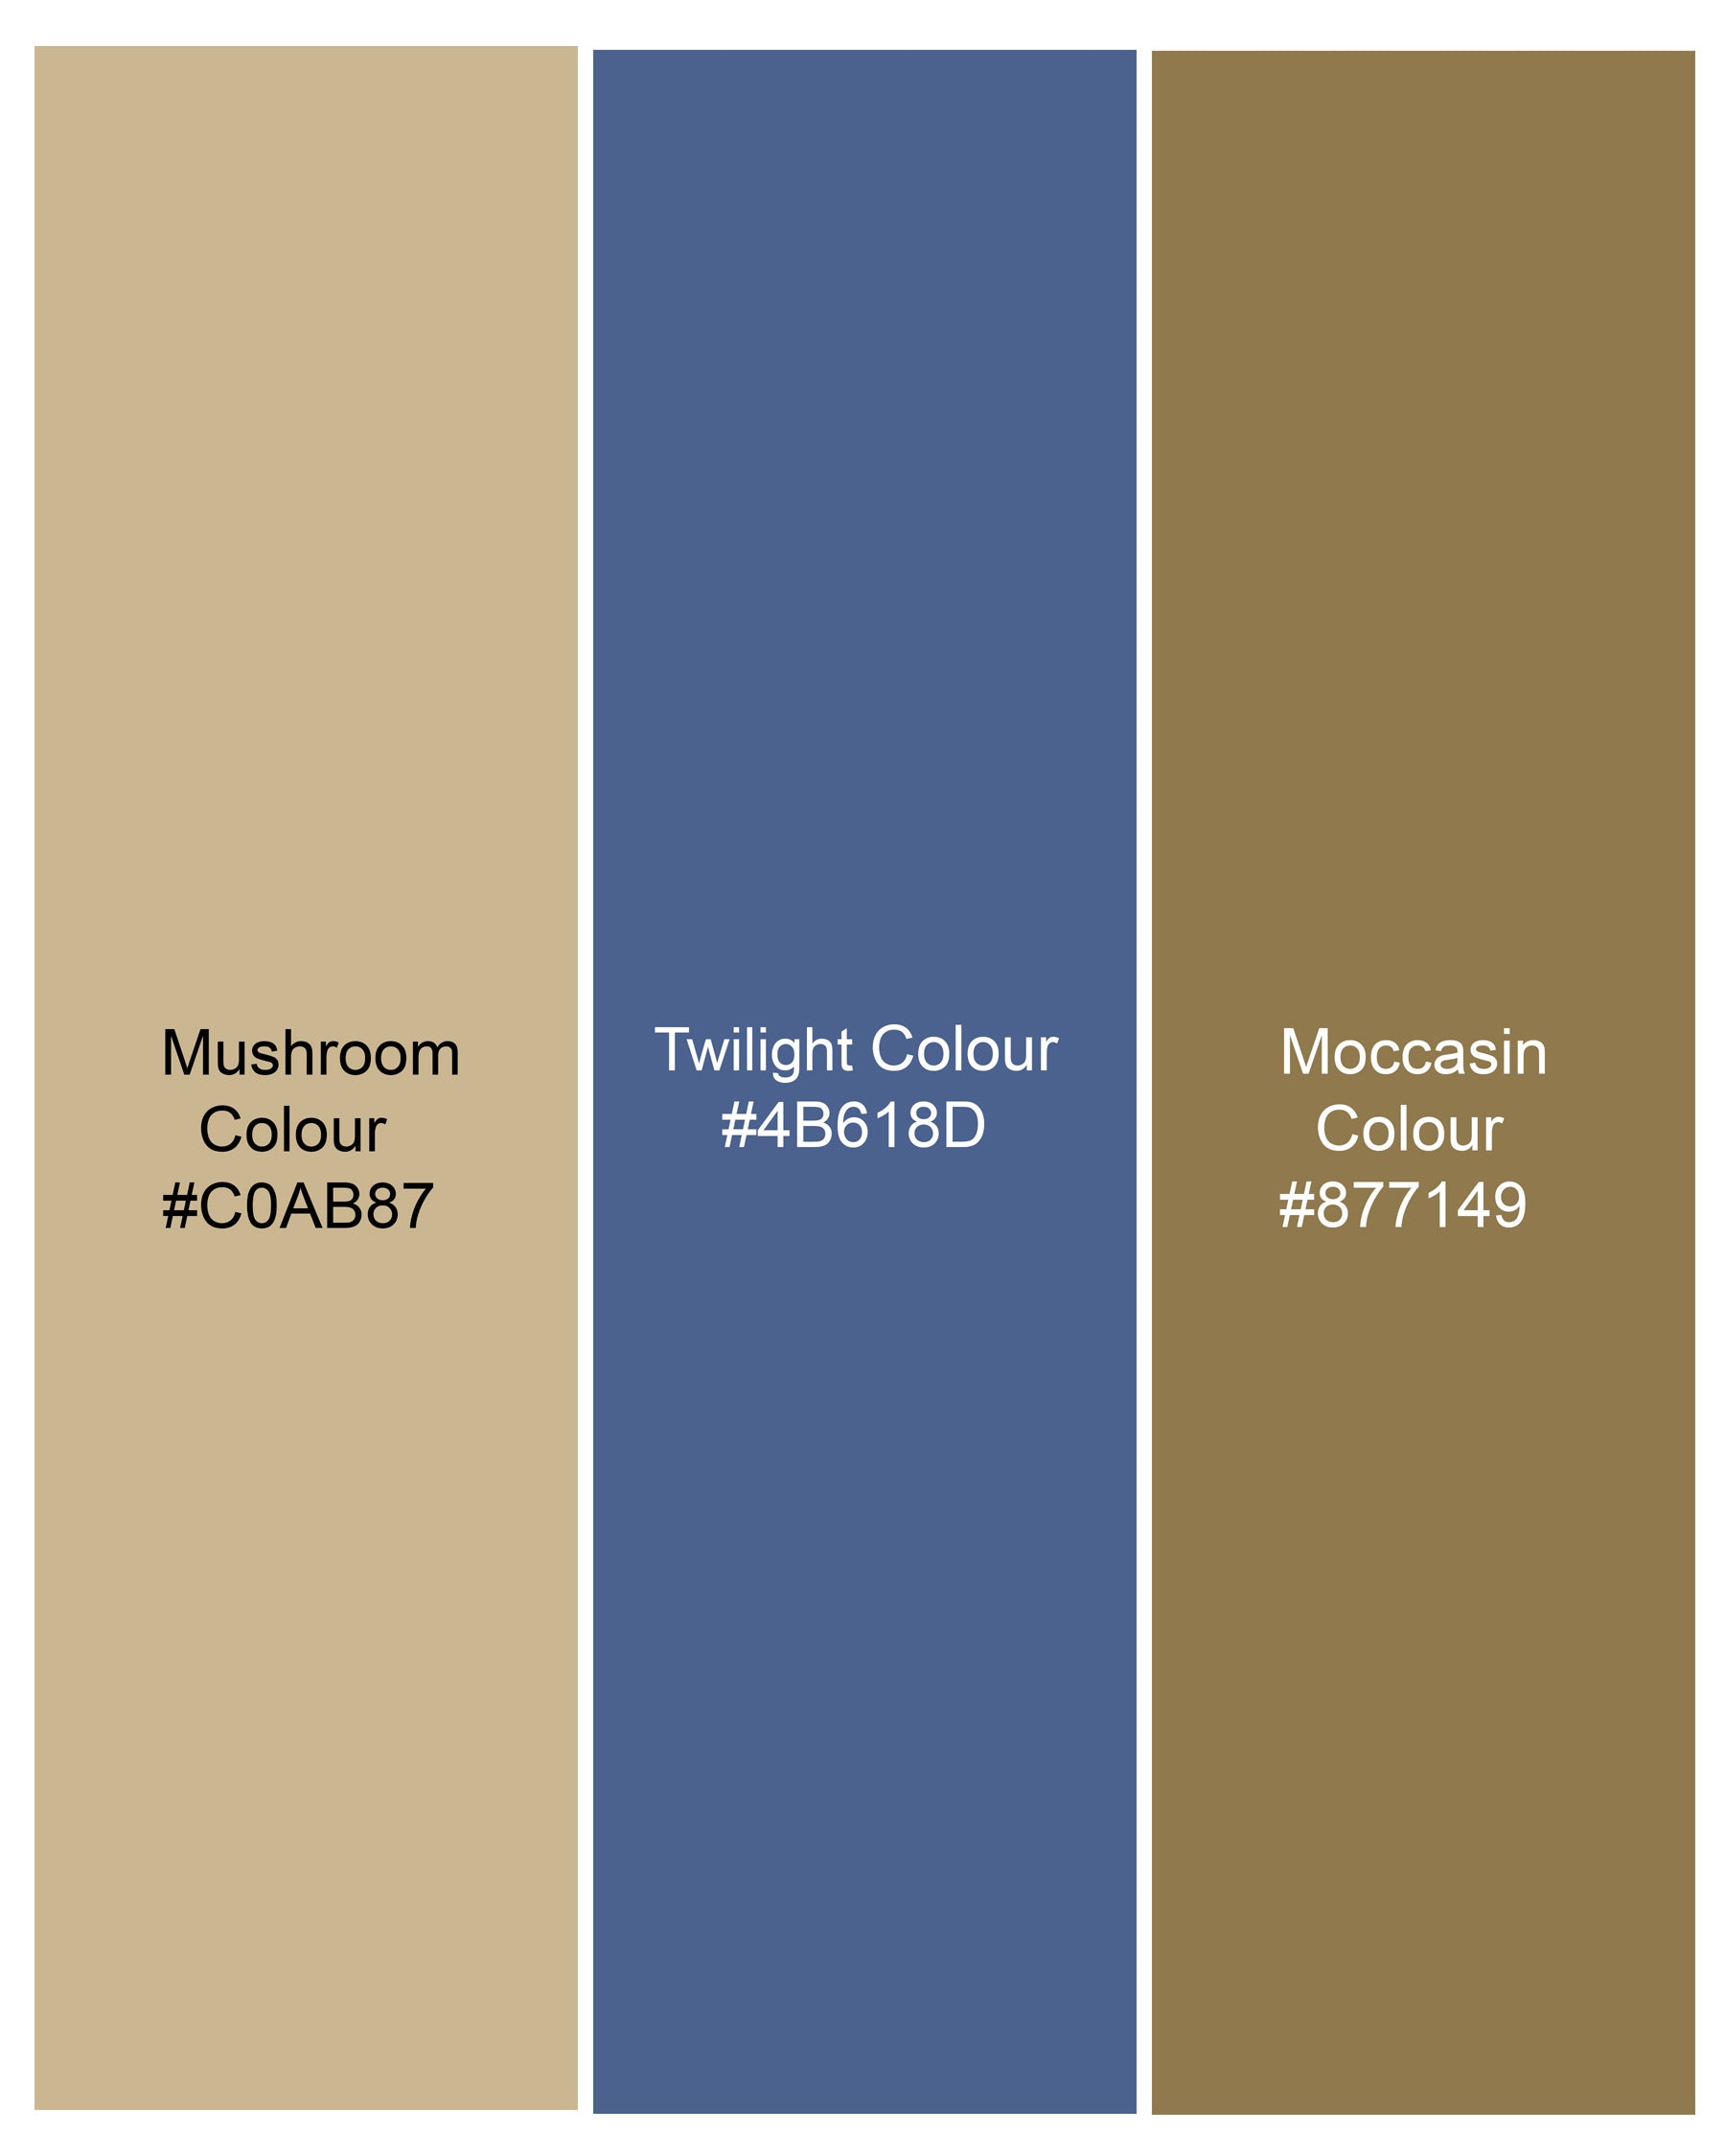 Mushroom Light Brown Checkered Pant T2139-28, T2139-30, T2139-32, T2139-34, T2139-36, T2139-38, T2139-40, T2139-42, T2139-44
